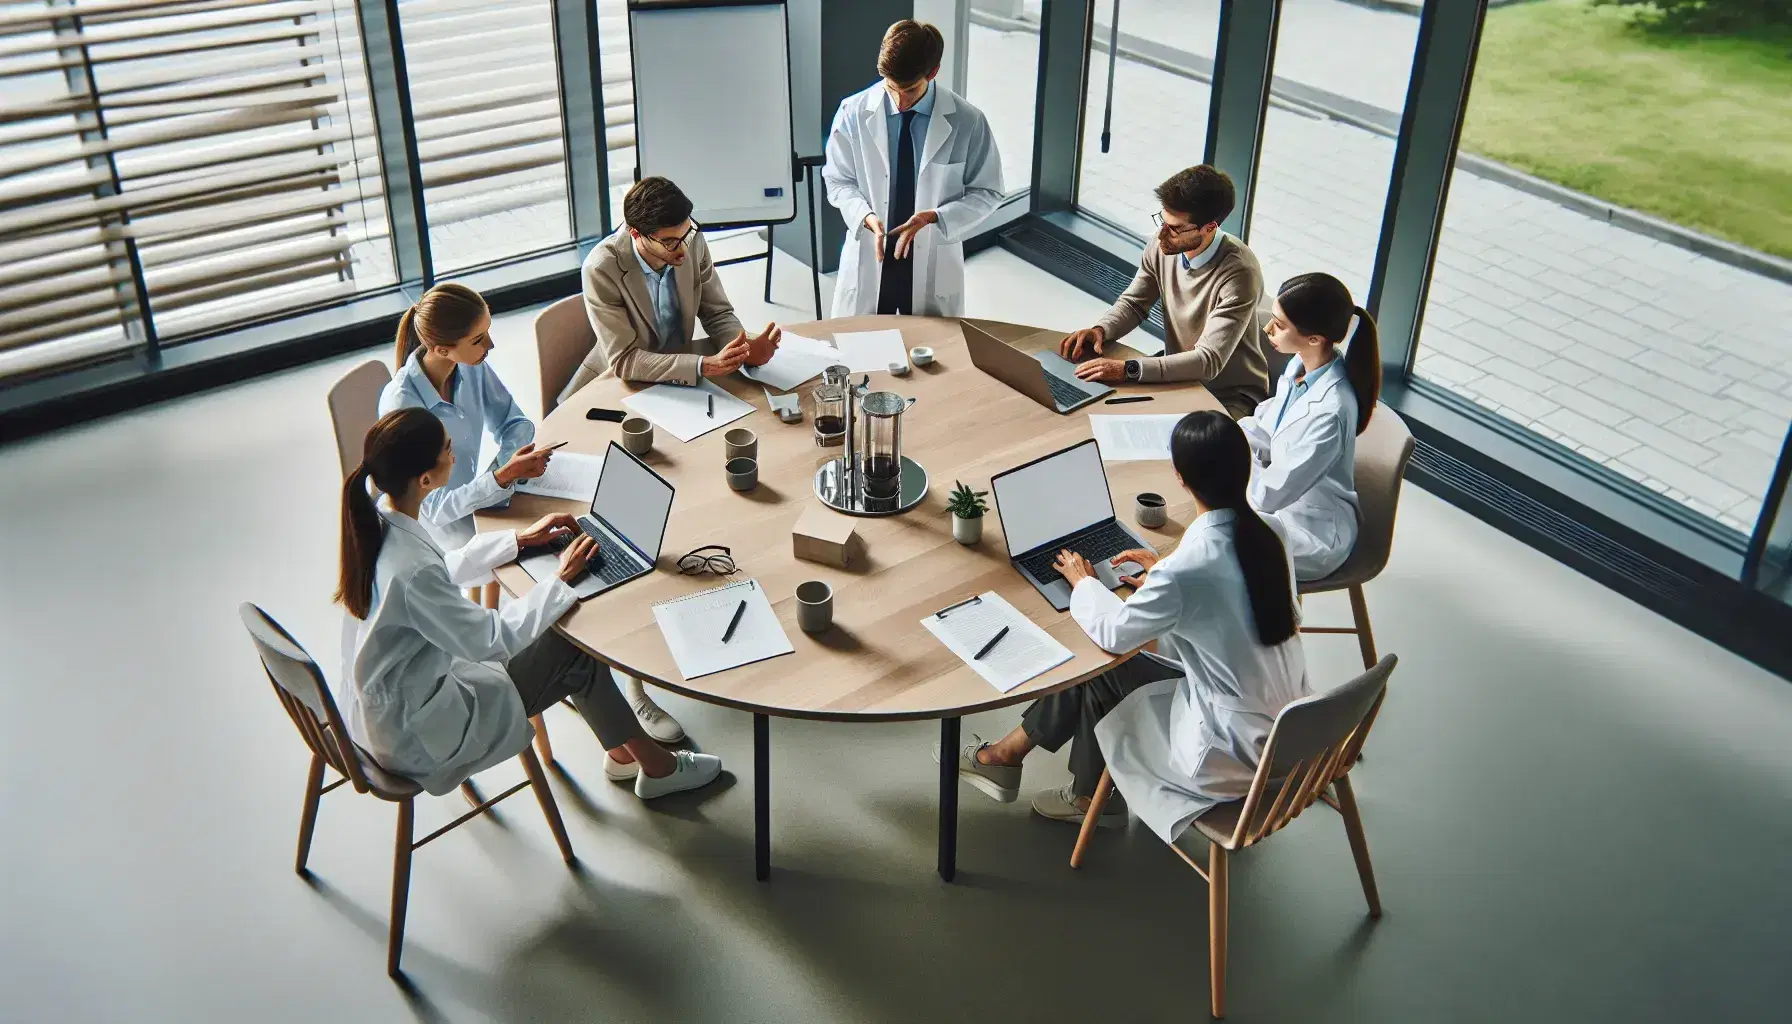 Grupo de cinco profesionales en reunión de trabajo alrededor de una mesa redonda con portátiles, papeles y tazas de café, en una sala iluminada con una pizarra blanca y planta al fondo.